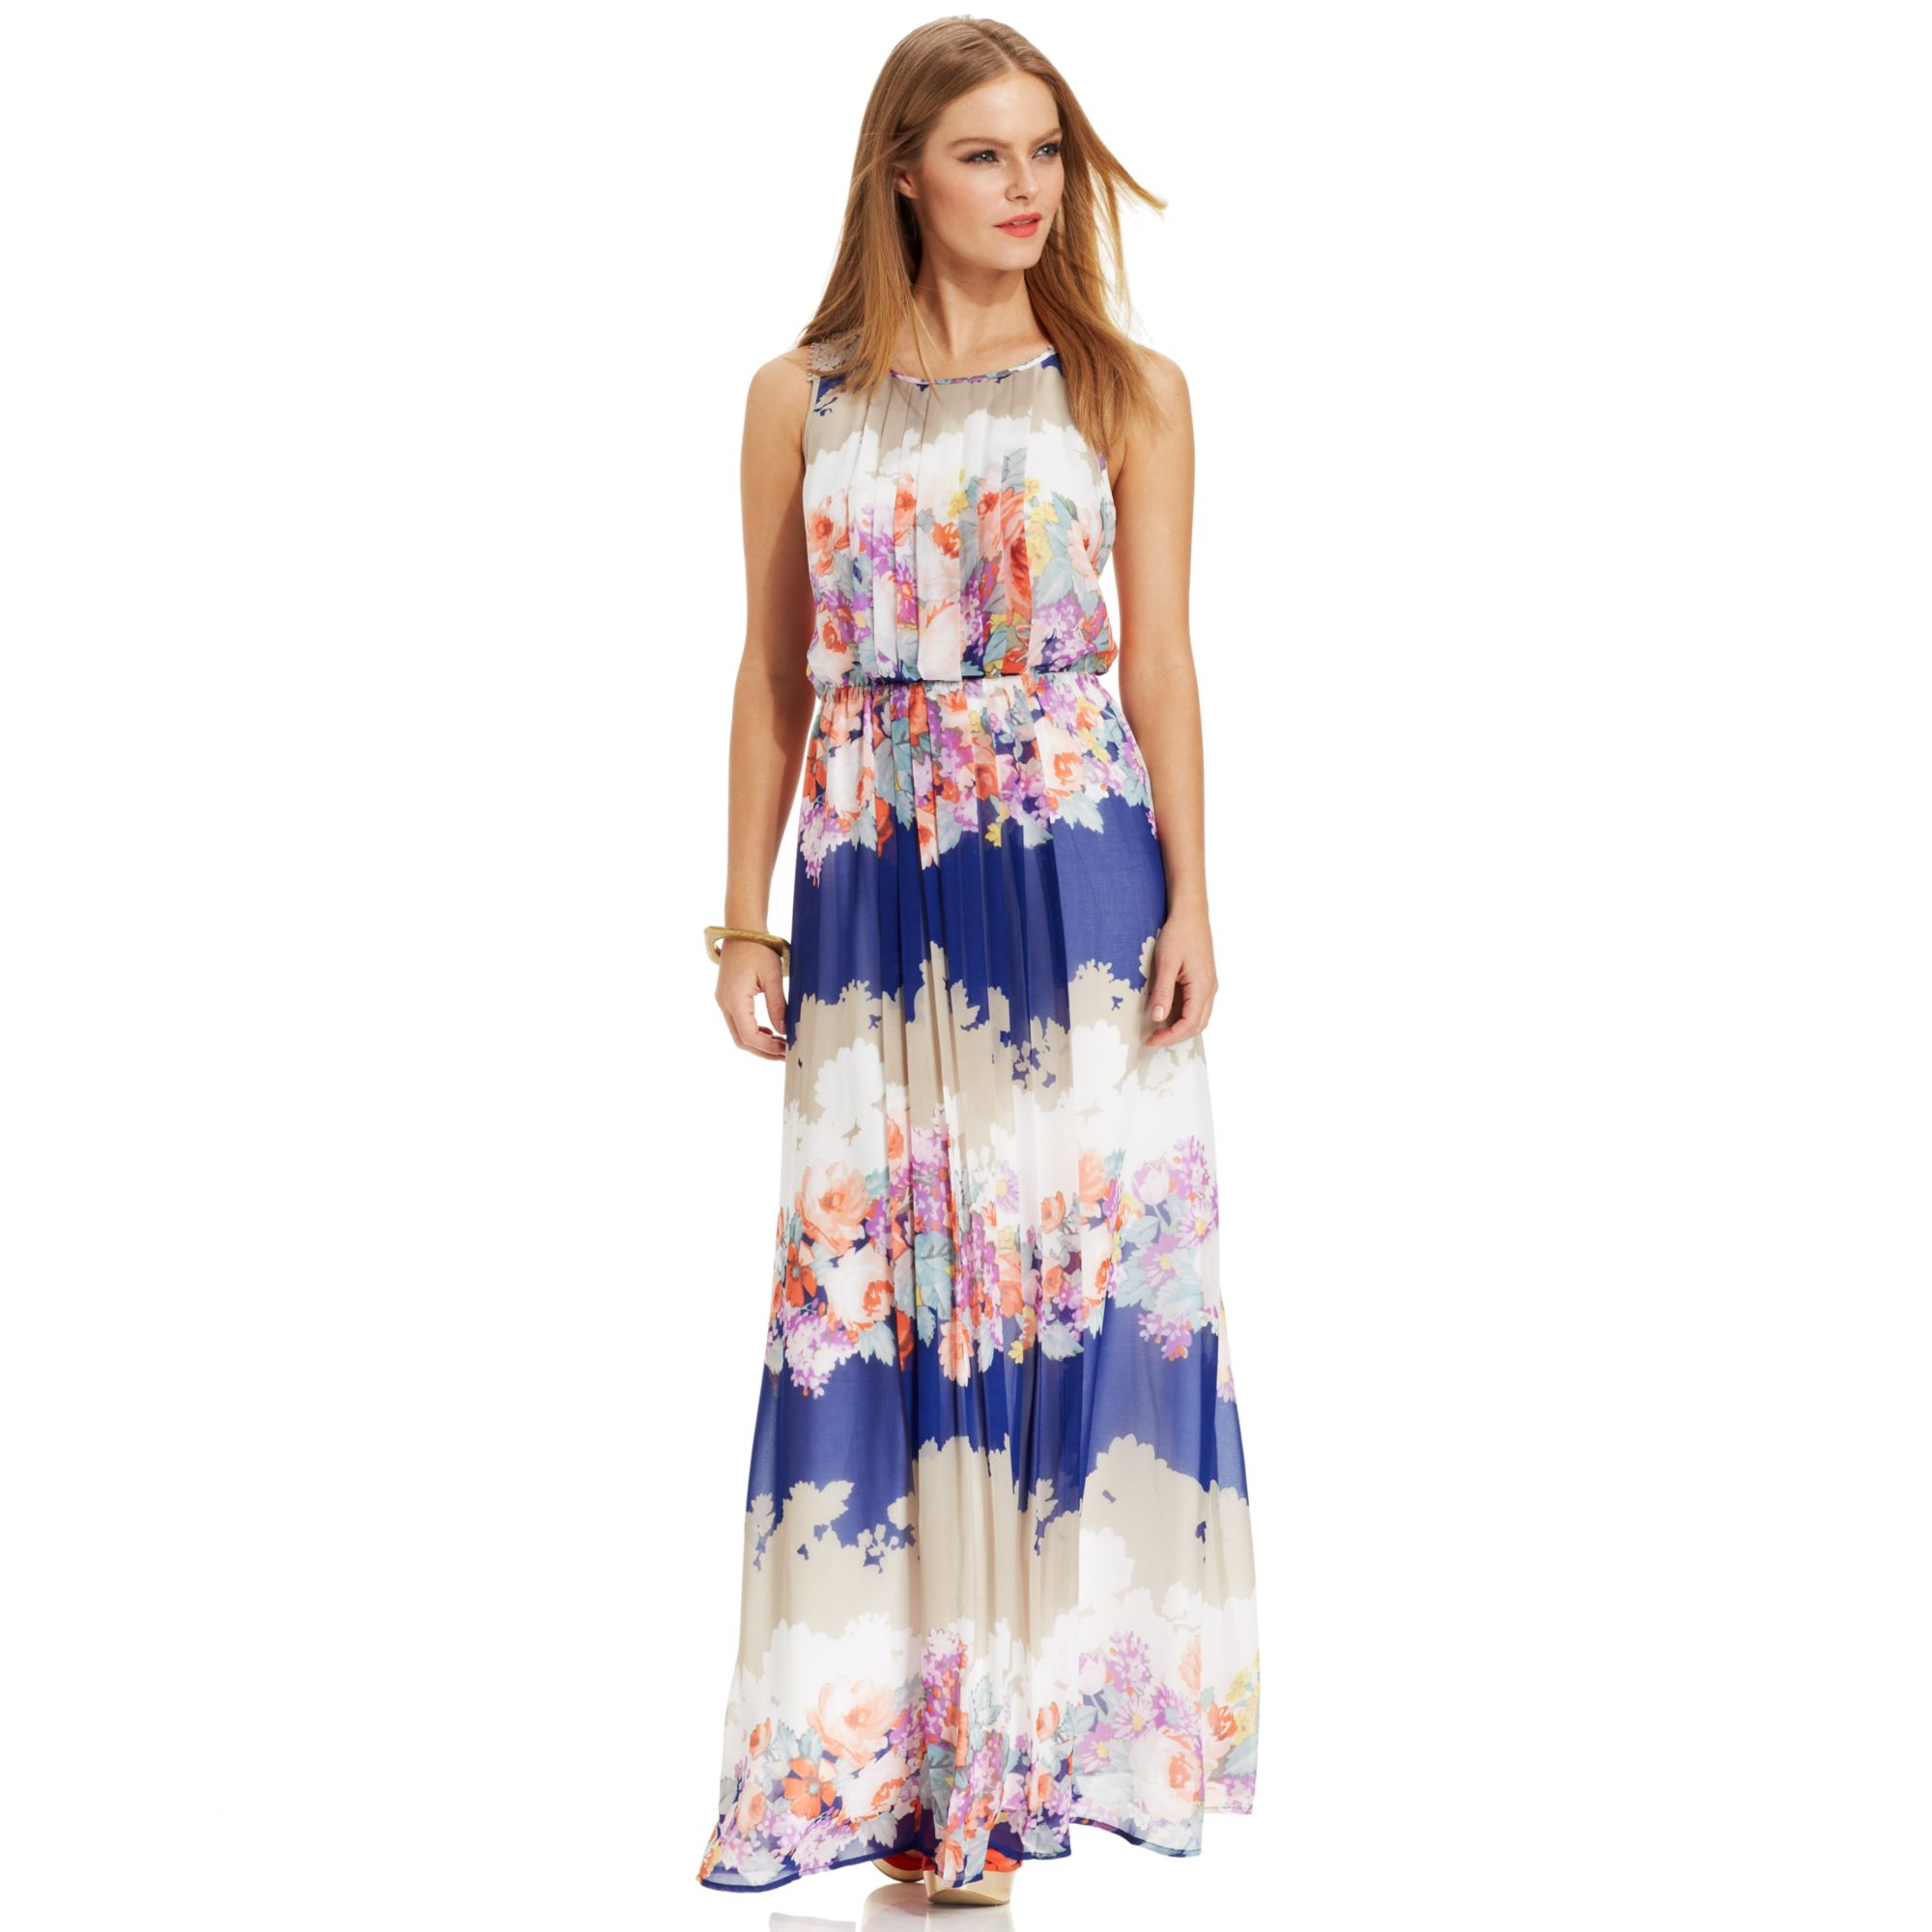 Macy's Summer Sundresses Sale Online ...